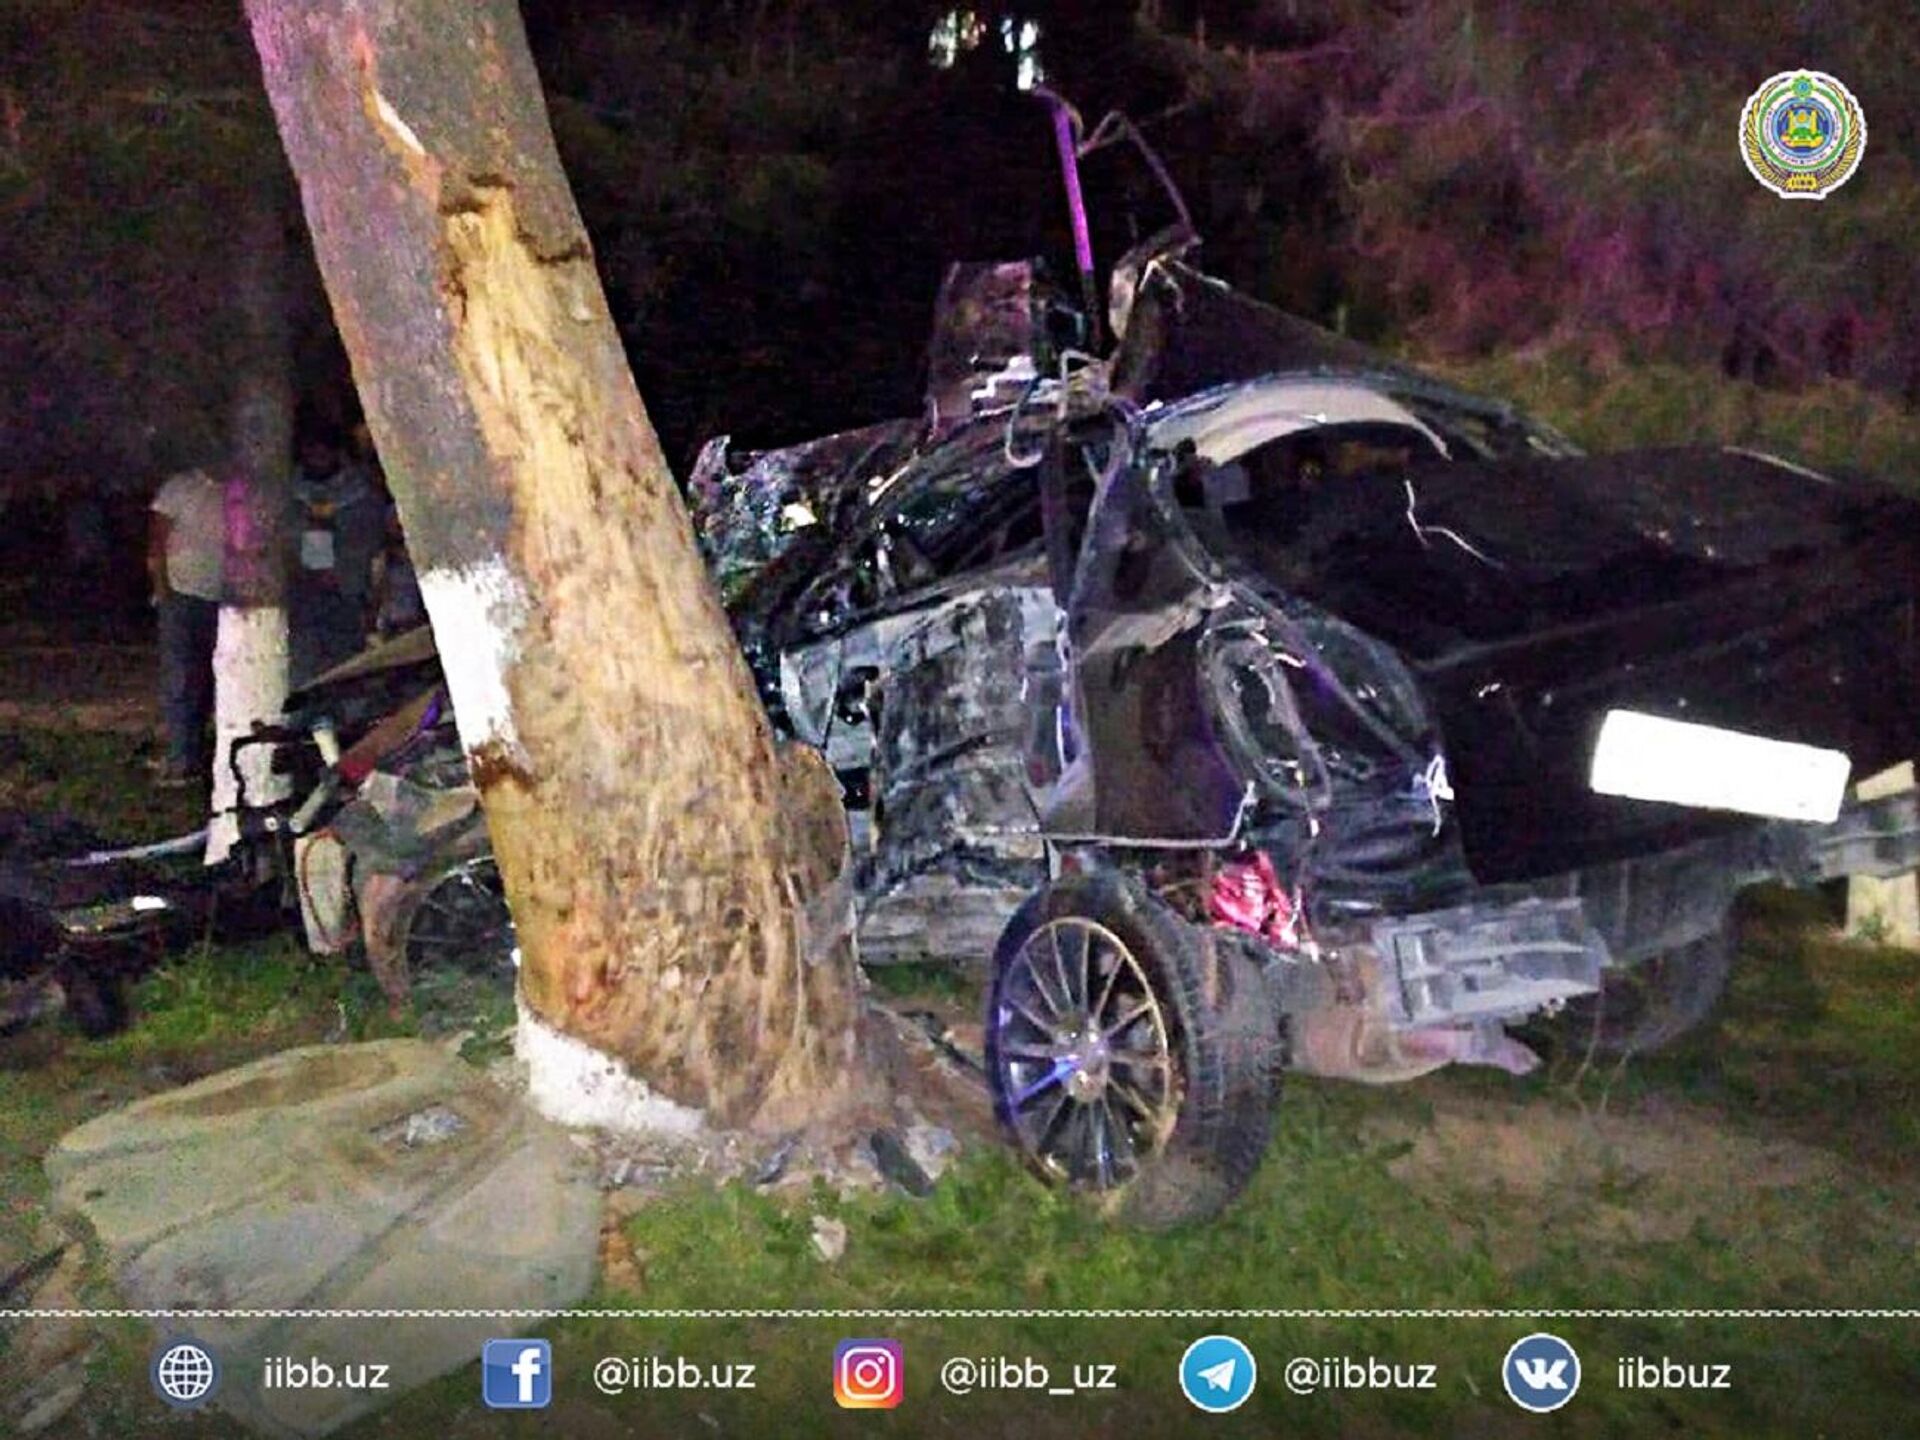 В Ташкенте водитель Lacetti на высокой скорости врезался в дерево и погиб - Sputnik Ўзбекистон, 1920, 29.04.2021